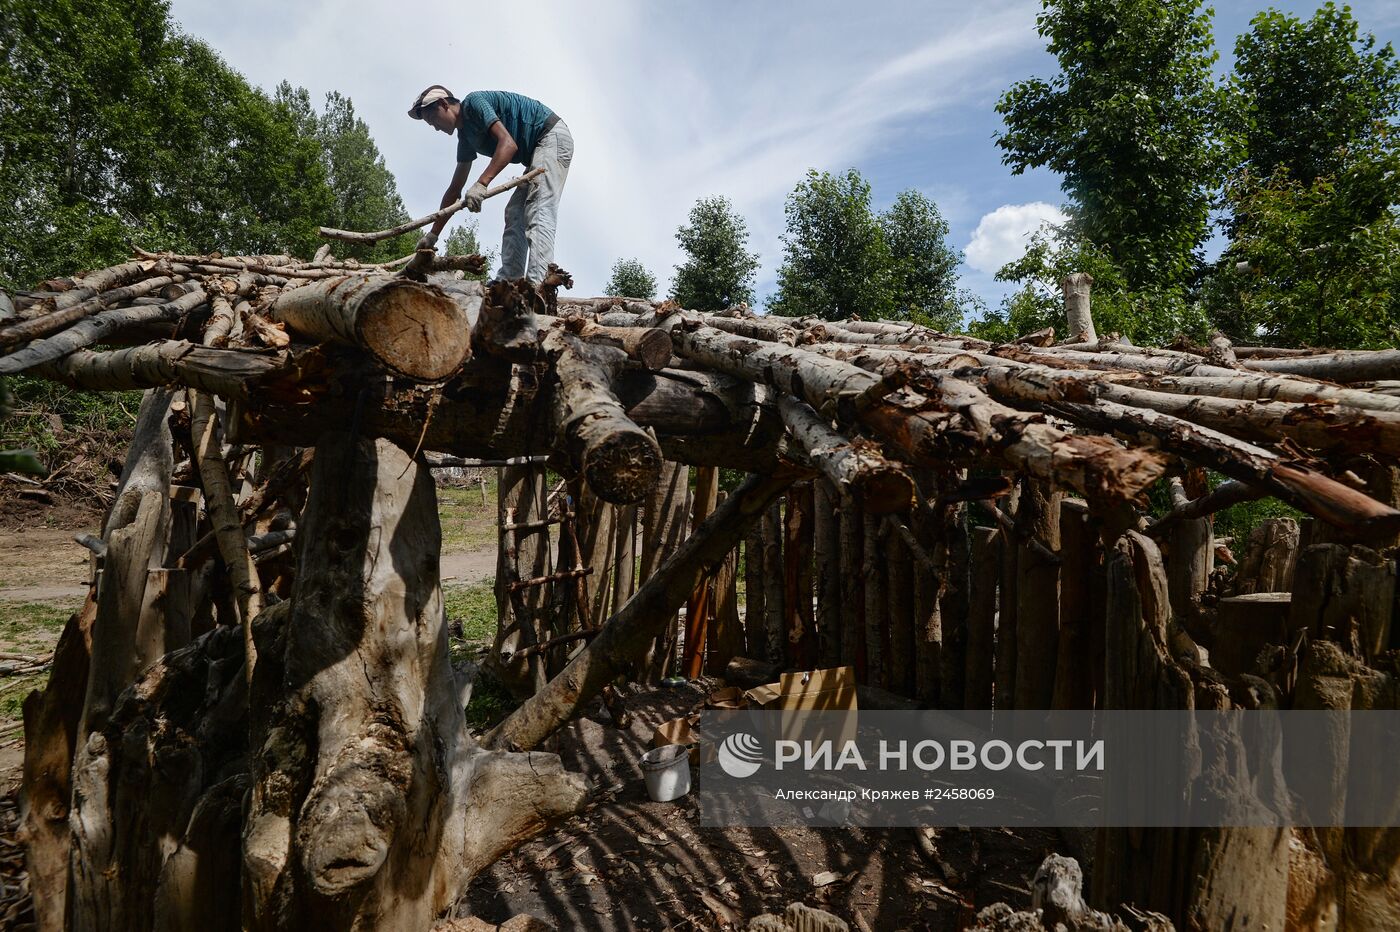 Эко-фестиваль "Елки-палки" в Новосибирске